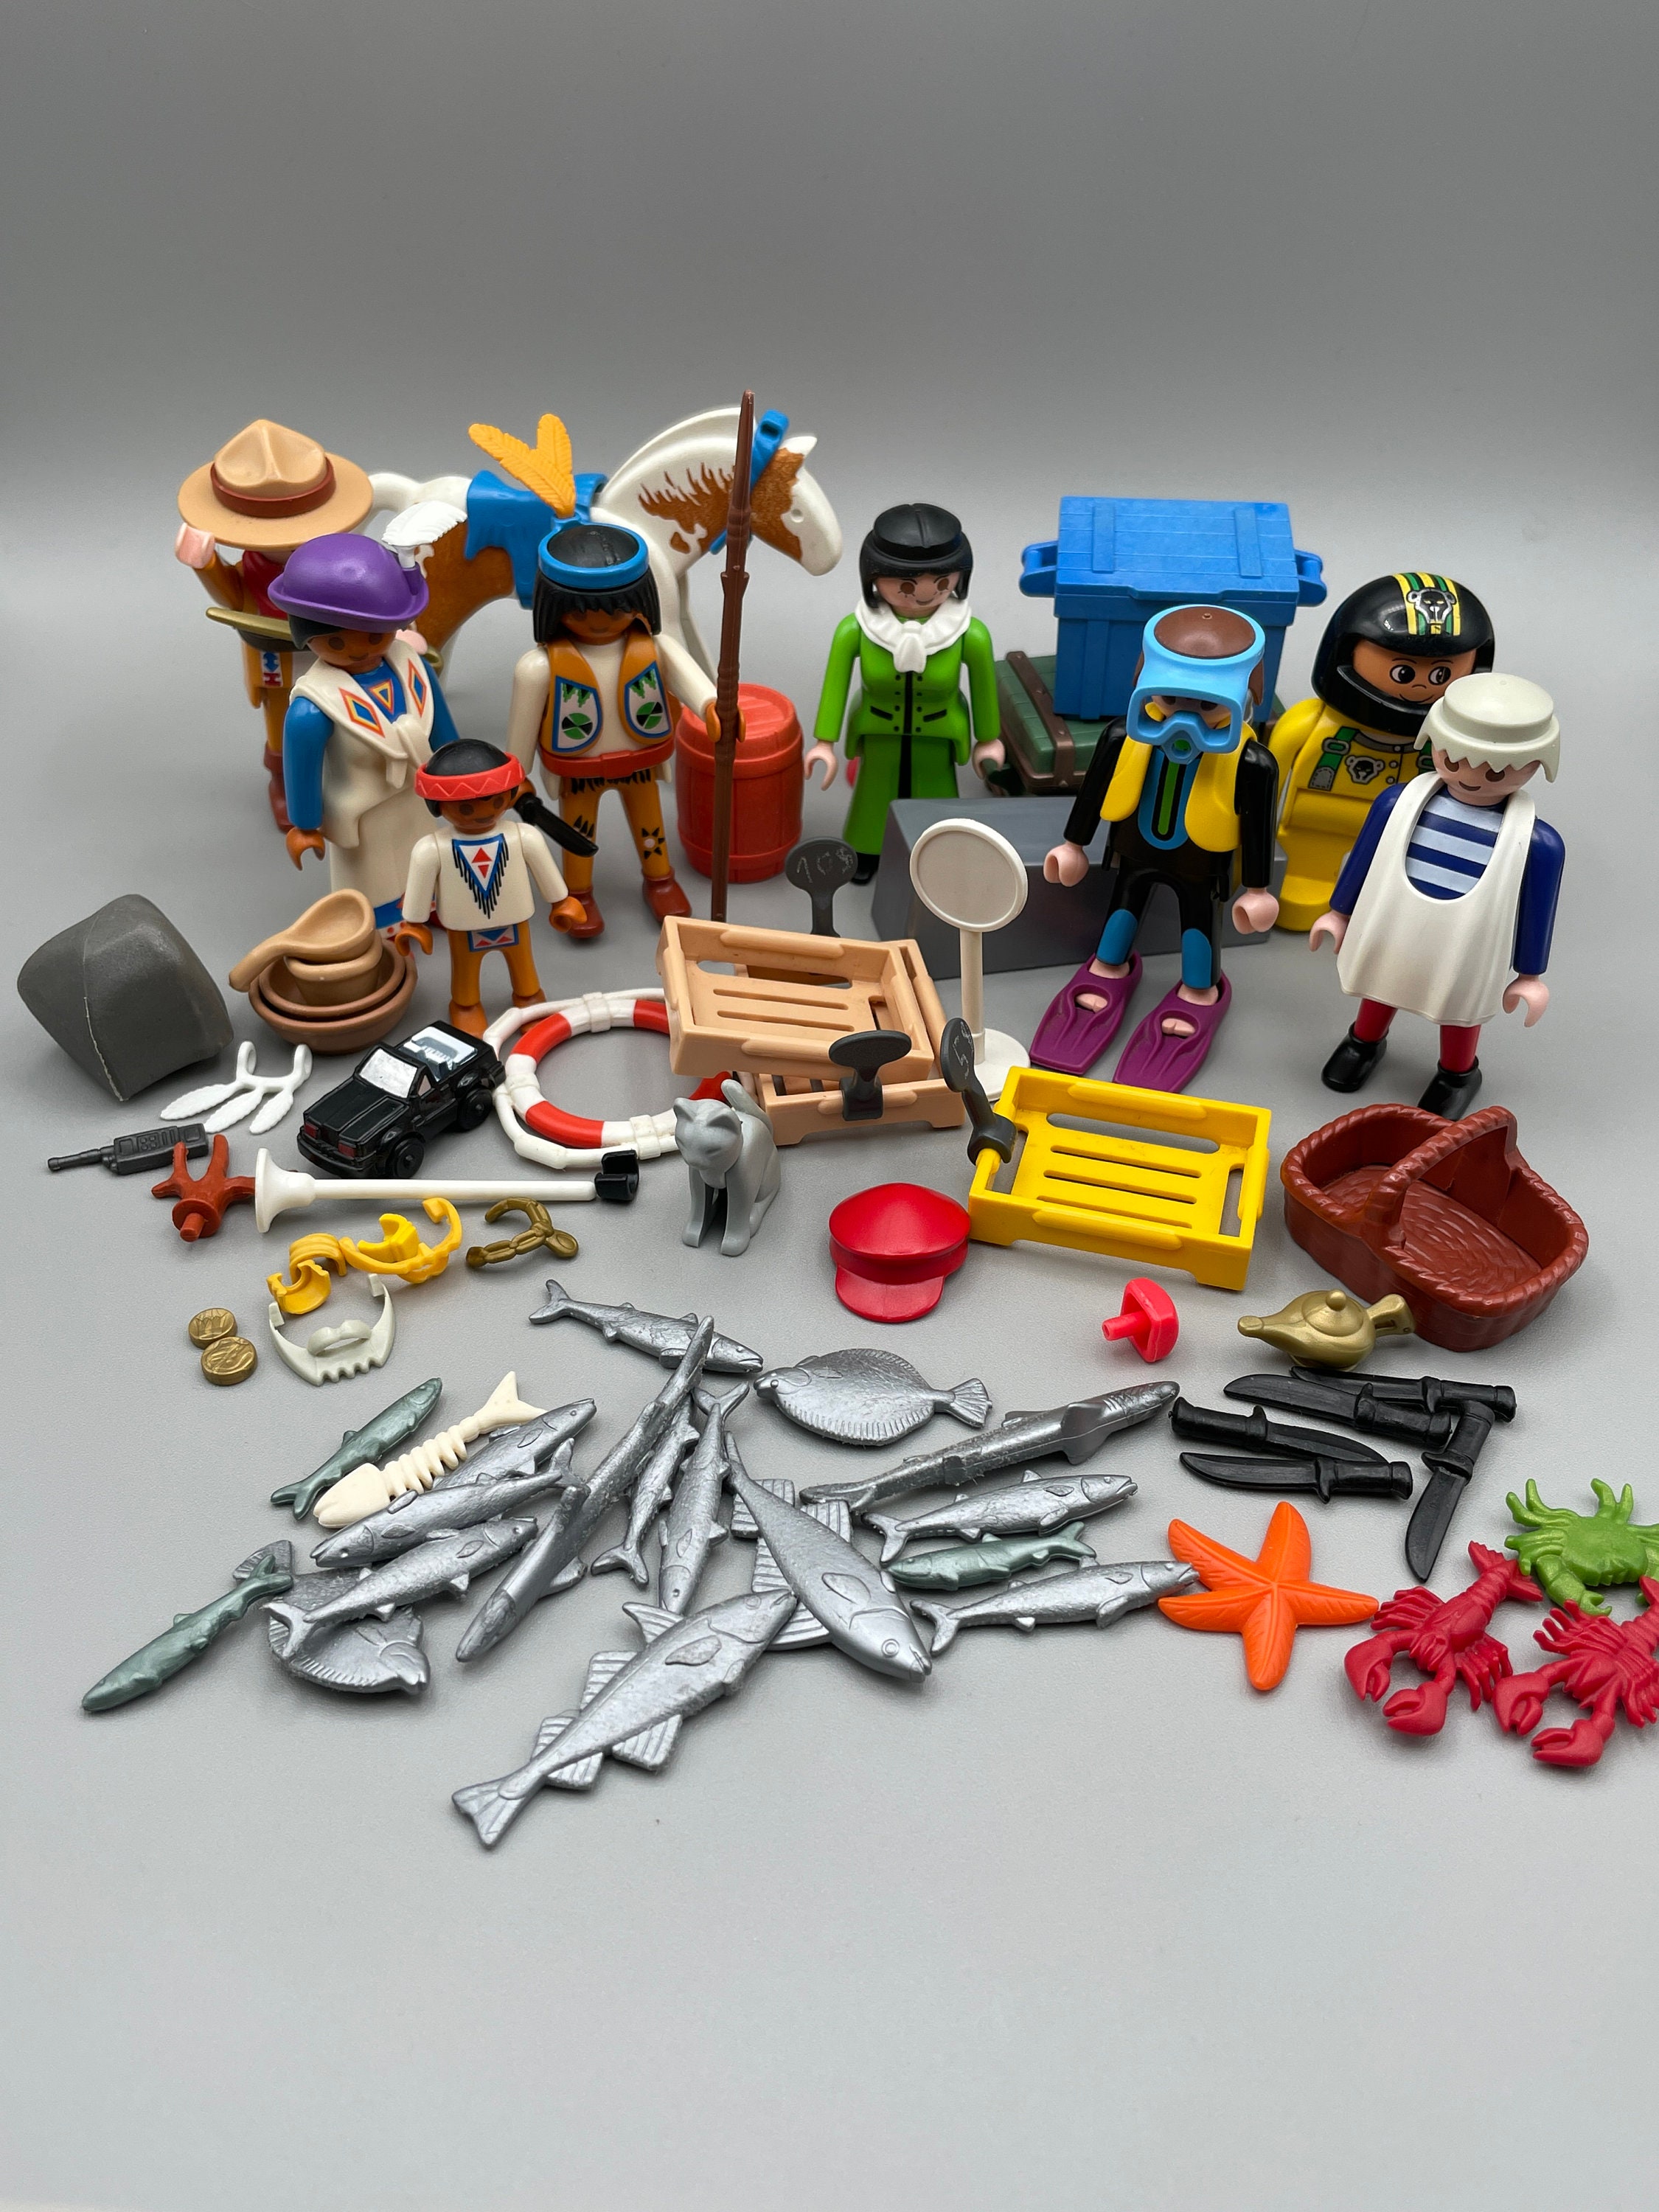 binding Steward Udholde Playmobil Parts - Etsy